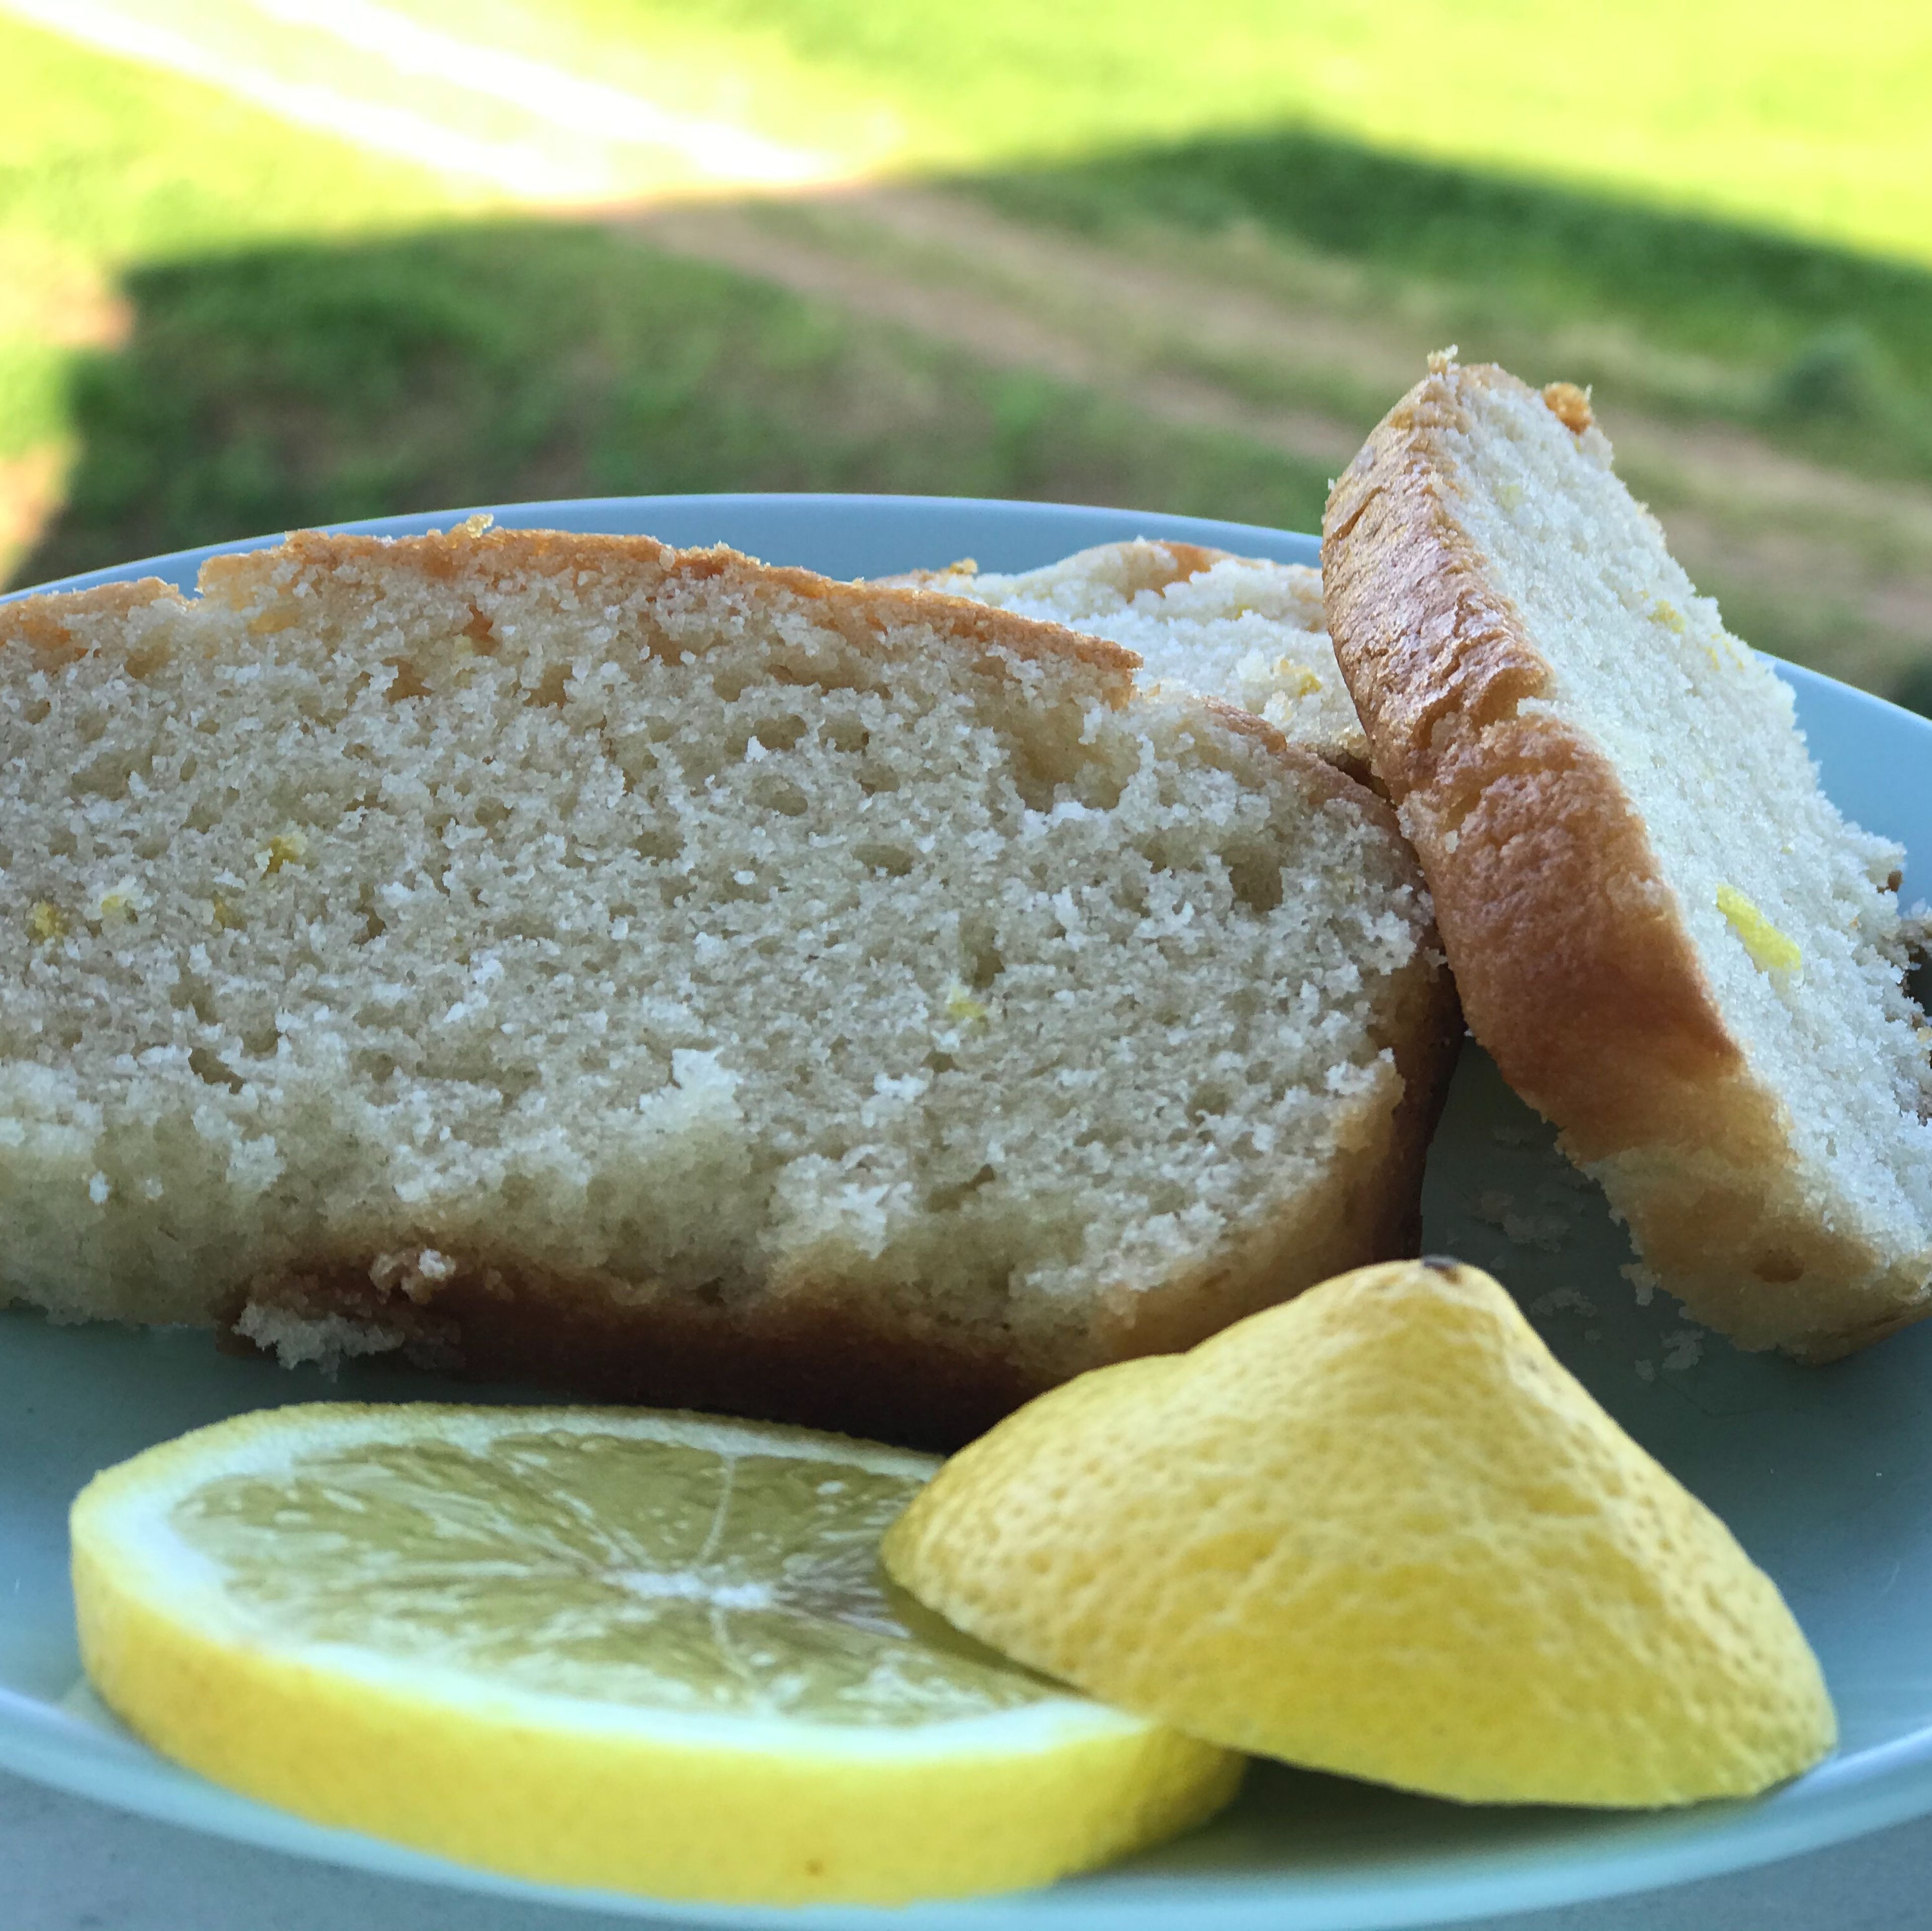 Vegan lemon cake